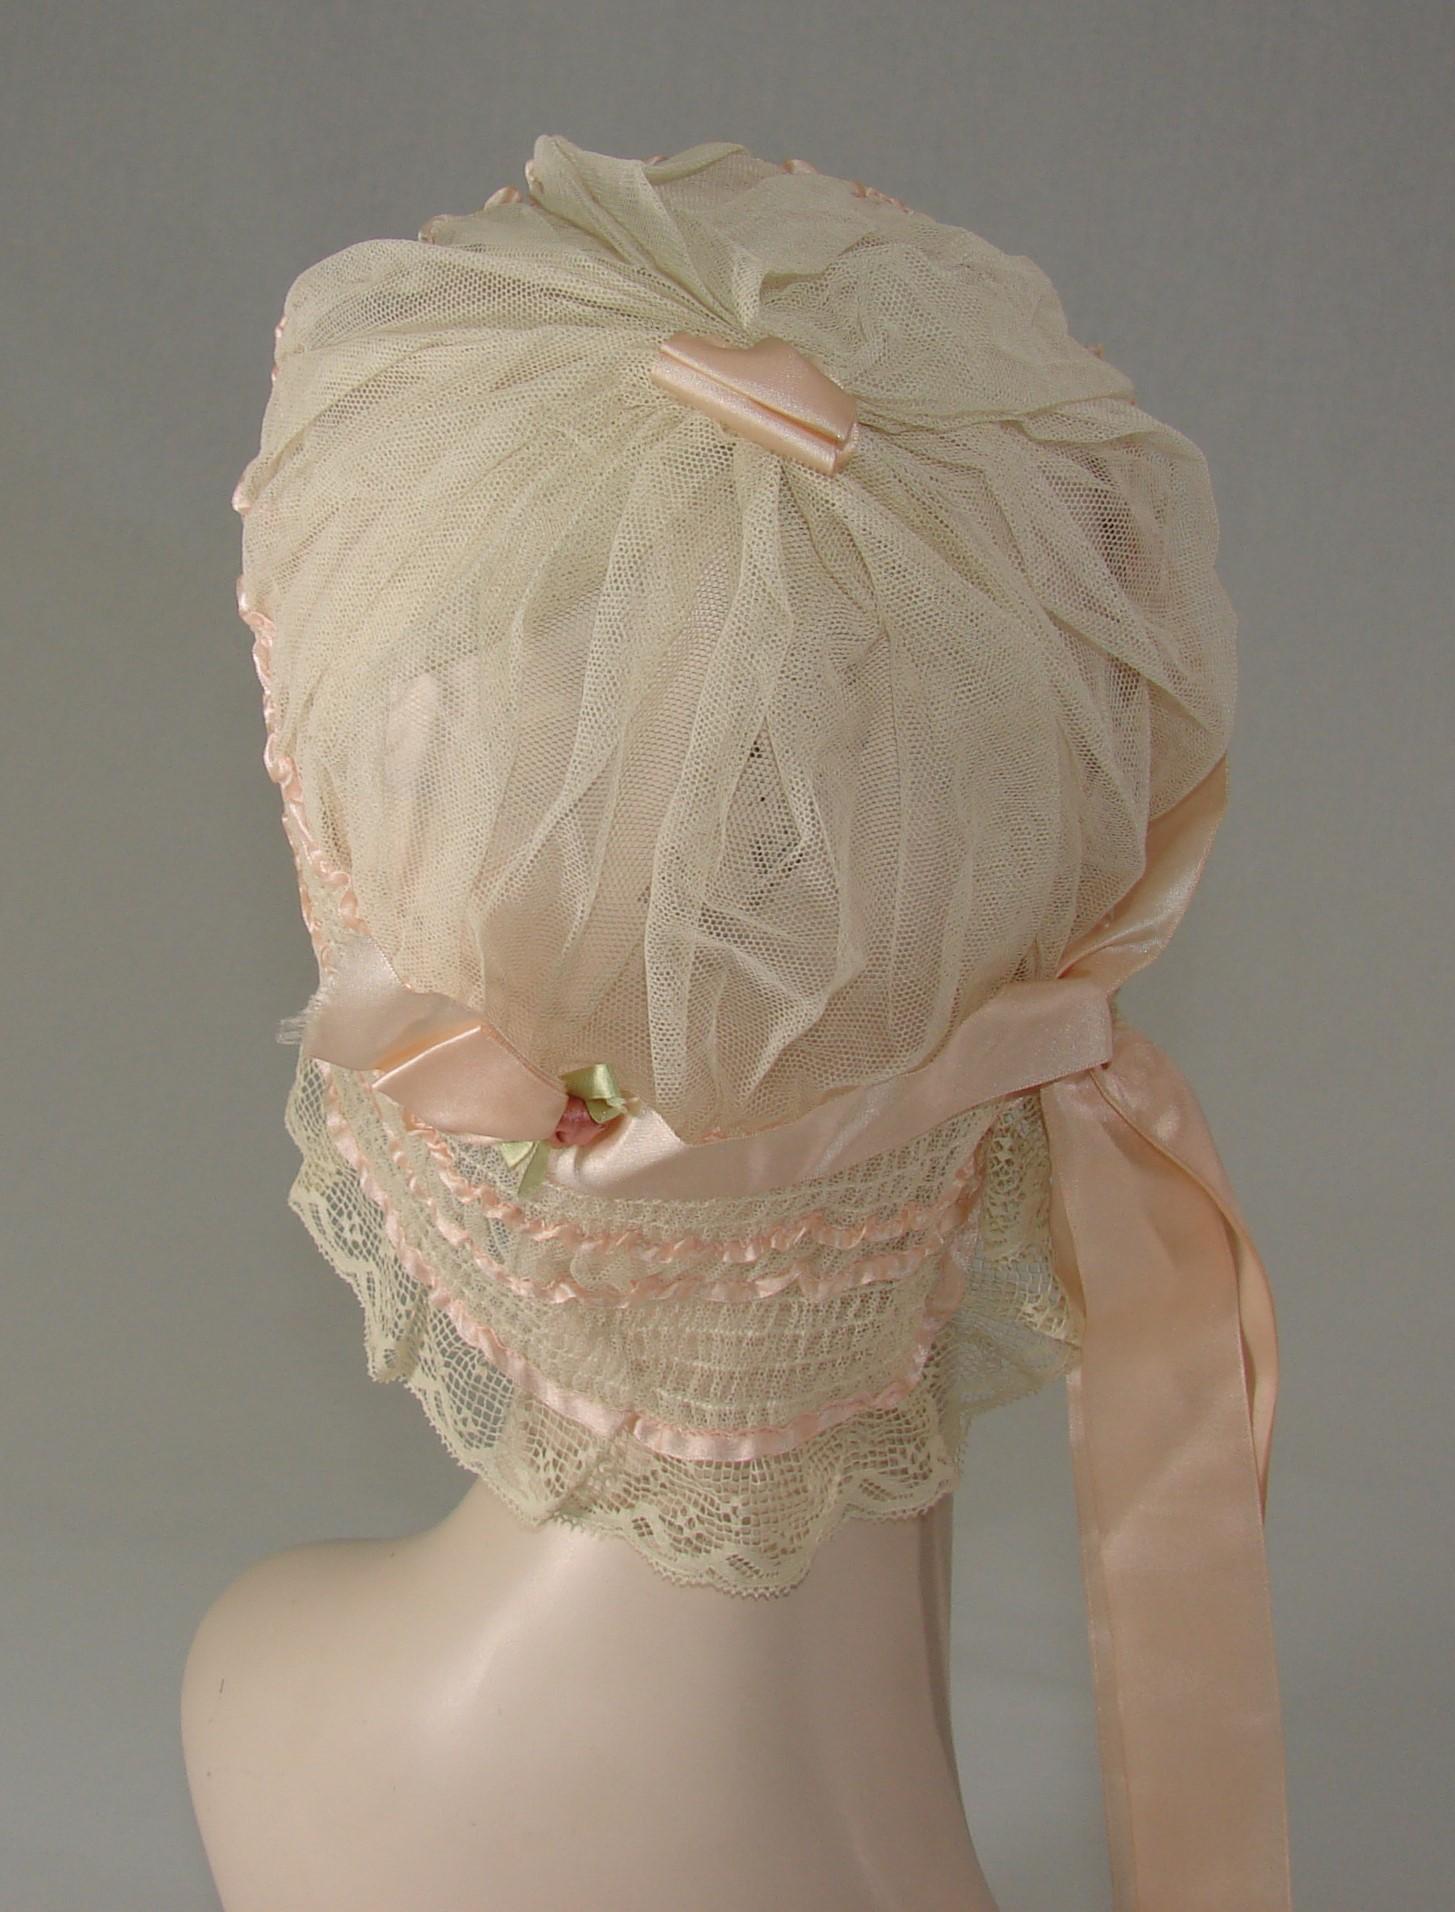 Vintage Ladies 1920s Lace And Silk Boudoir Cap